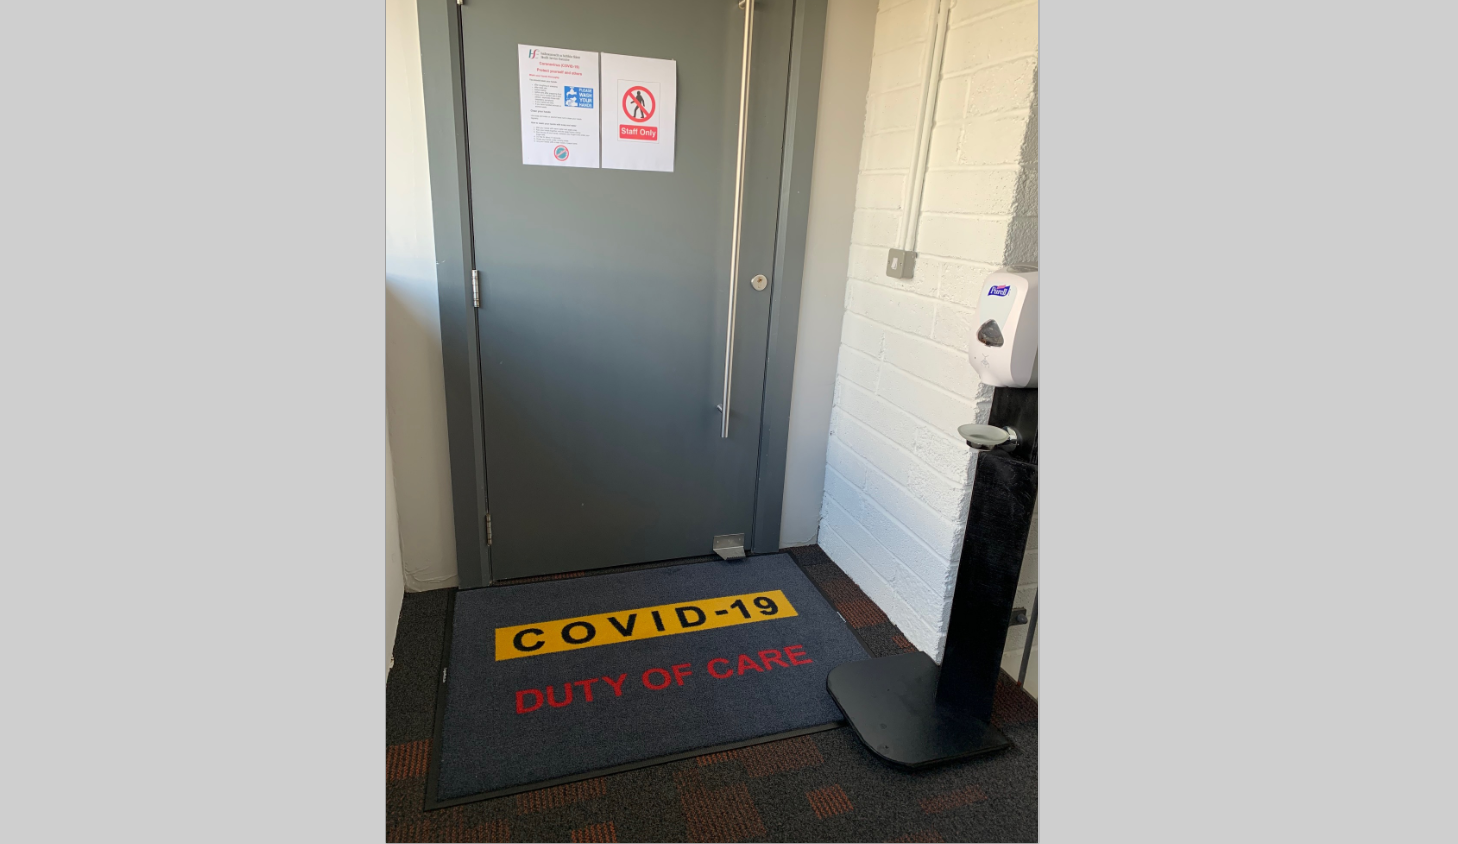 Duty of care mat used at Footfall  #Coronavirus